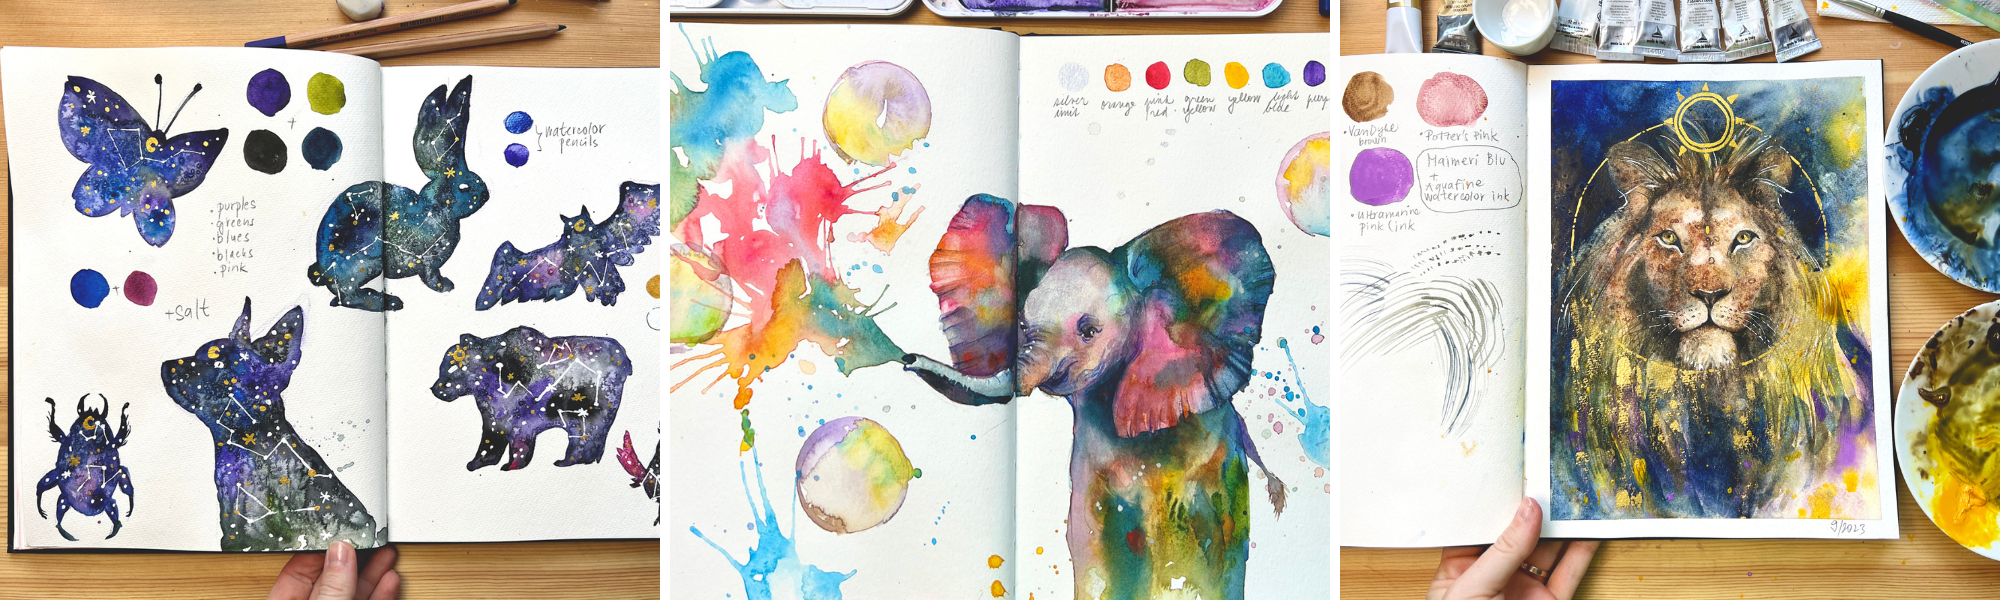 Colorful Watercolor Sketchbooking - Strathmore Workshop Series